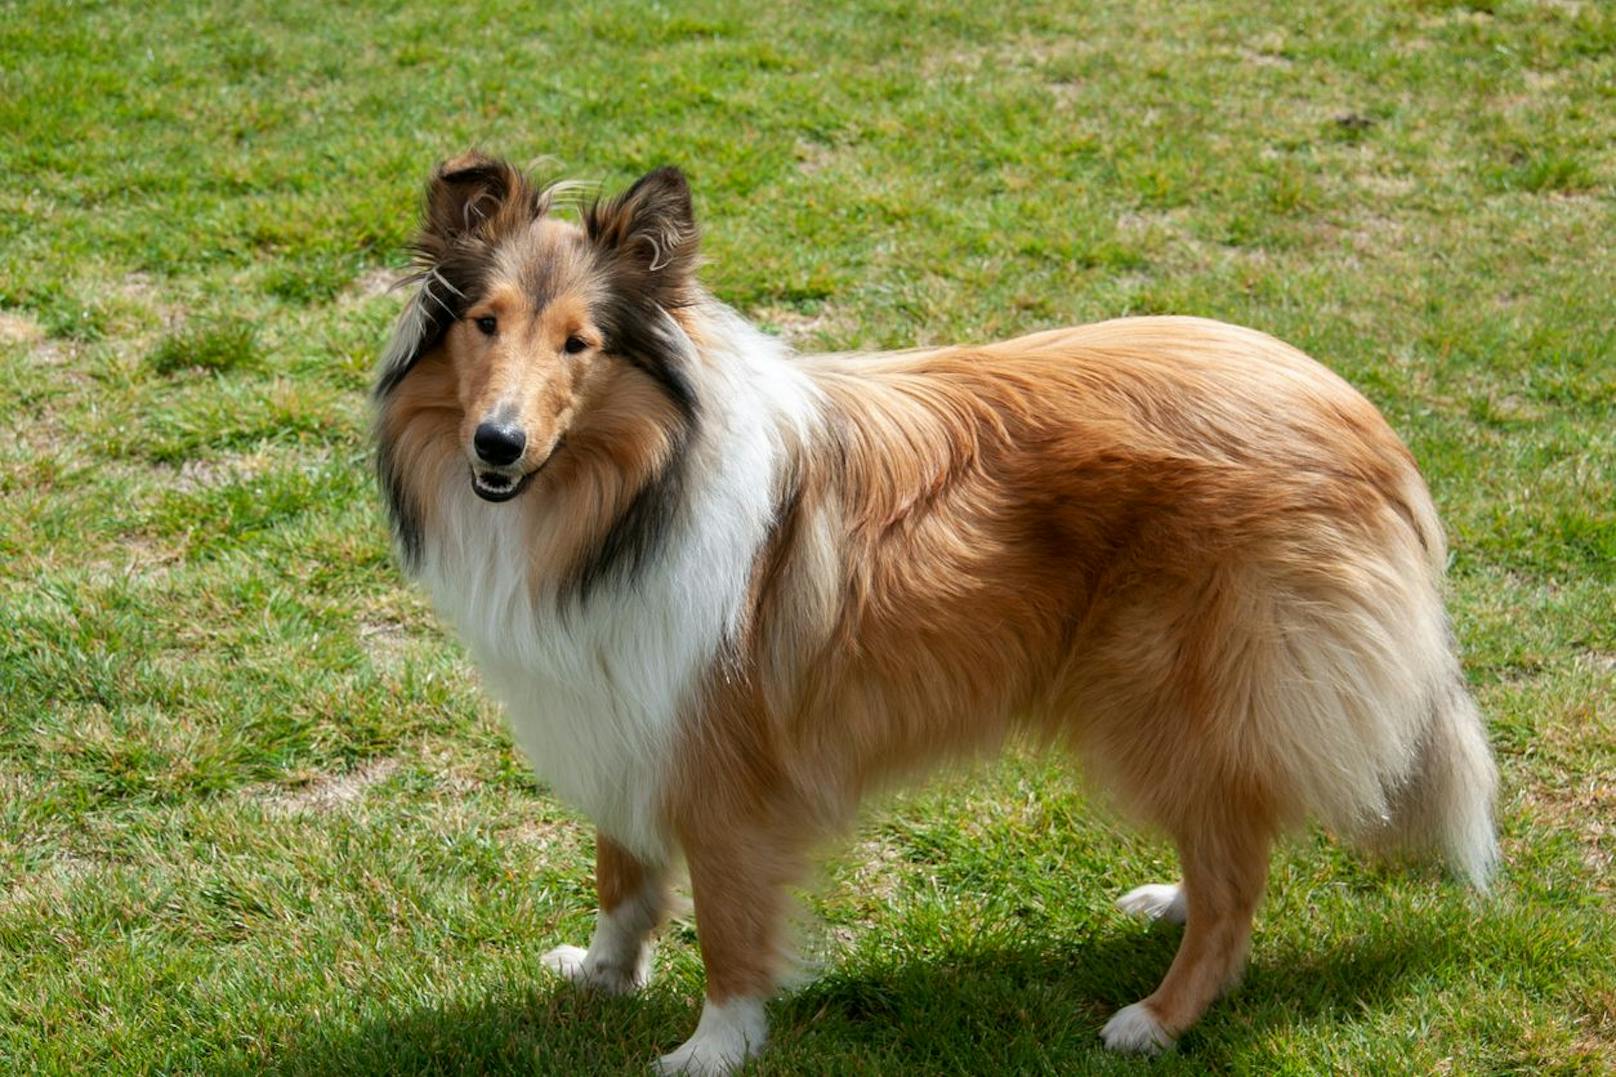 Kaum zu glauben, aber auch den "Rough Collie" - also, quasi "Lassie" sieht man kaum noch. Der Pflegeaufwand scheint vielen einfach zu groß. 